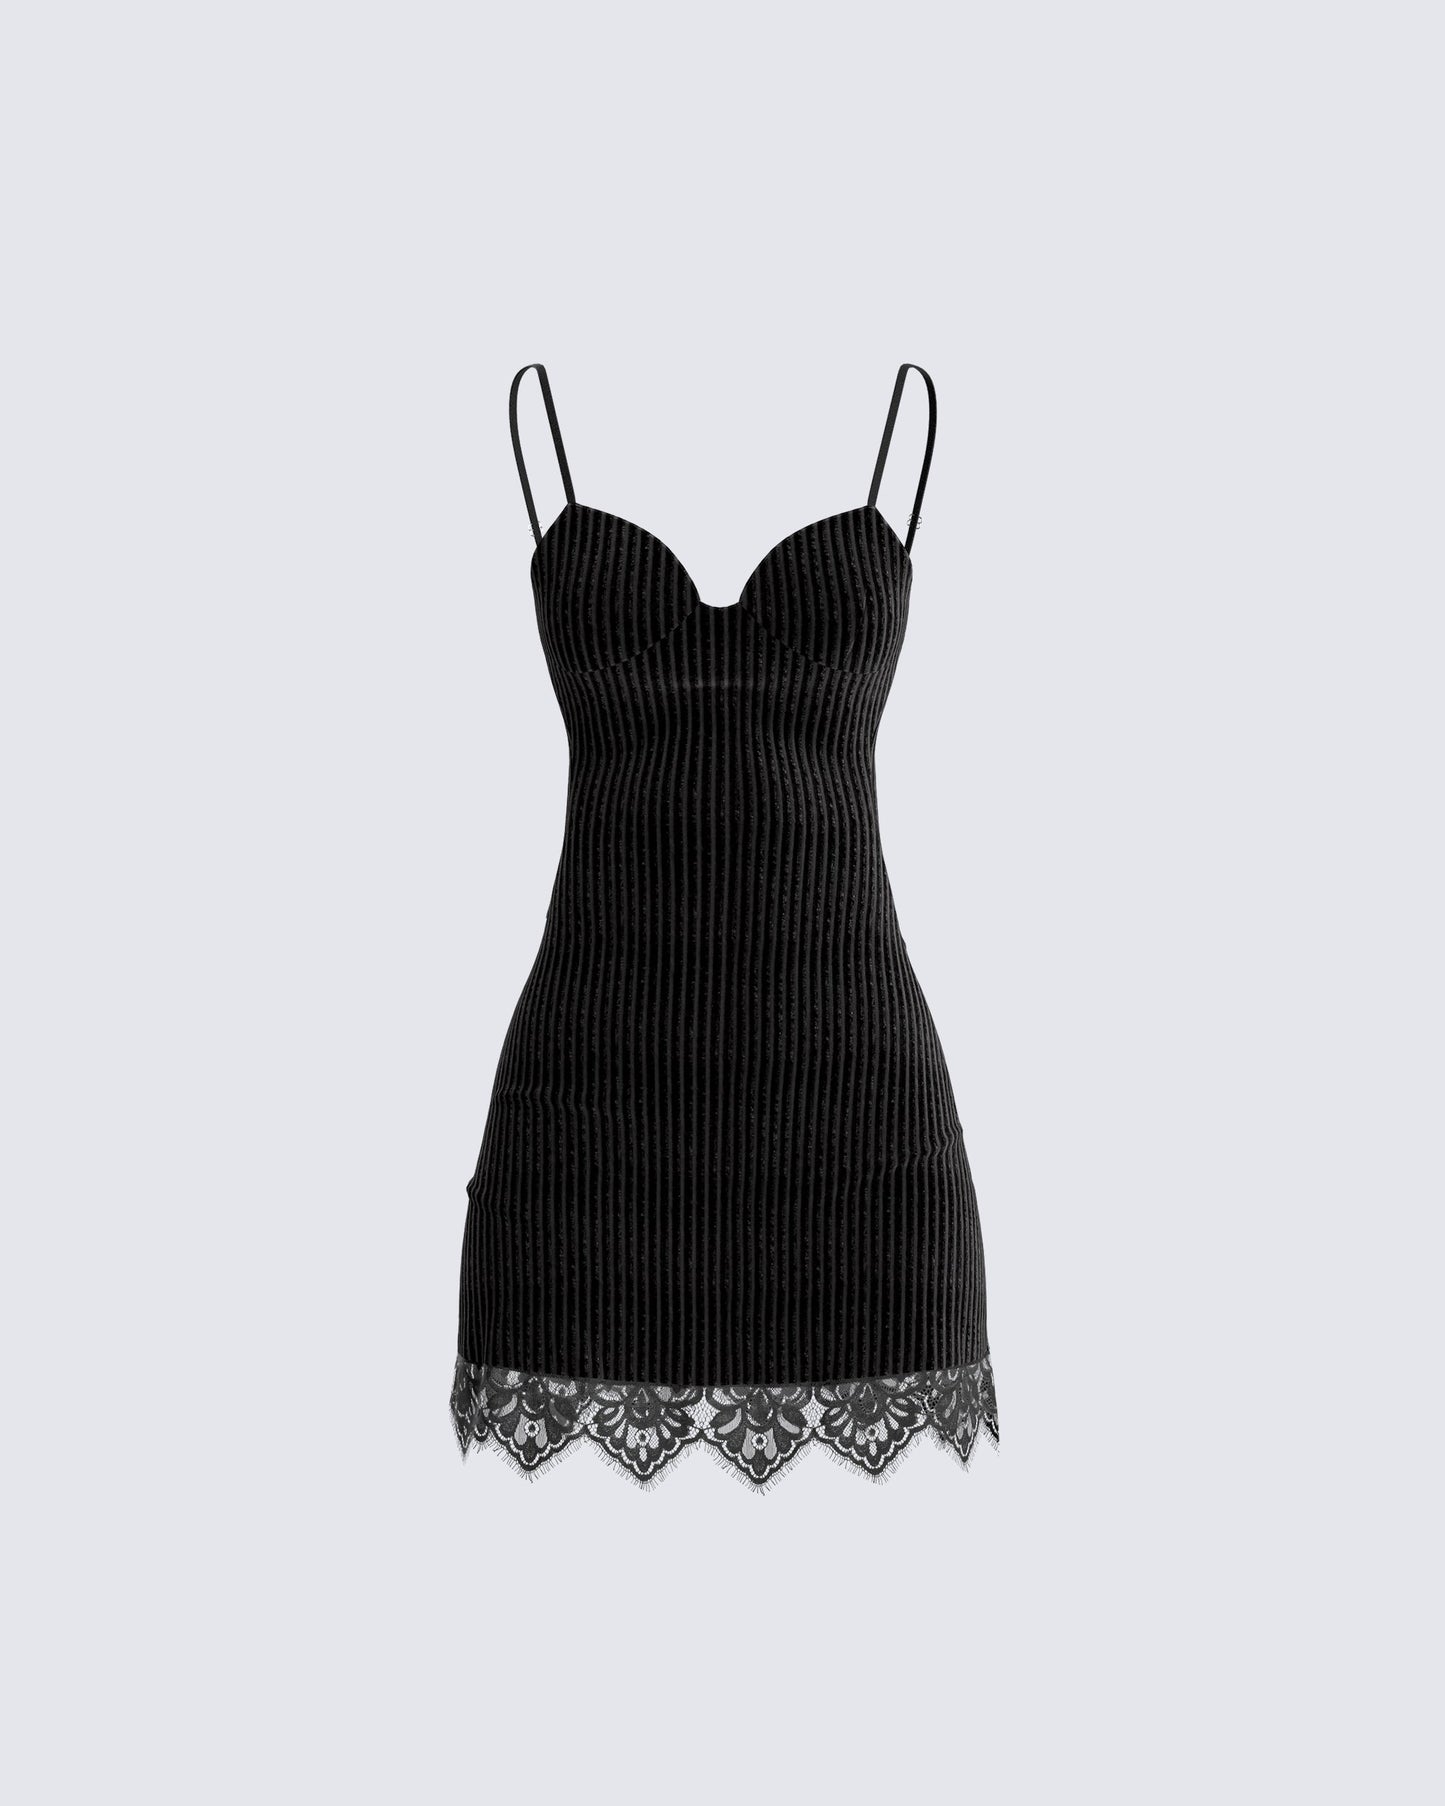 Yira Black Lace Trimmed Dress